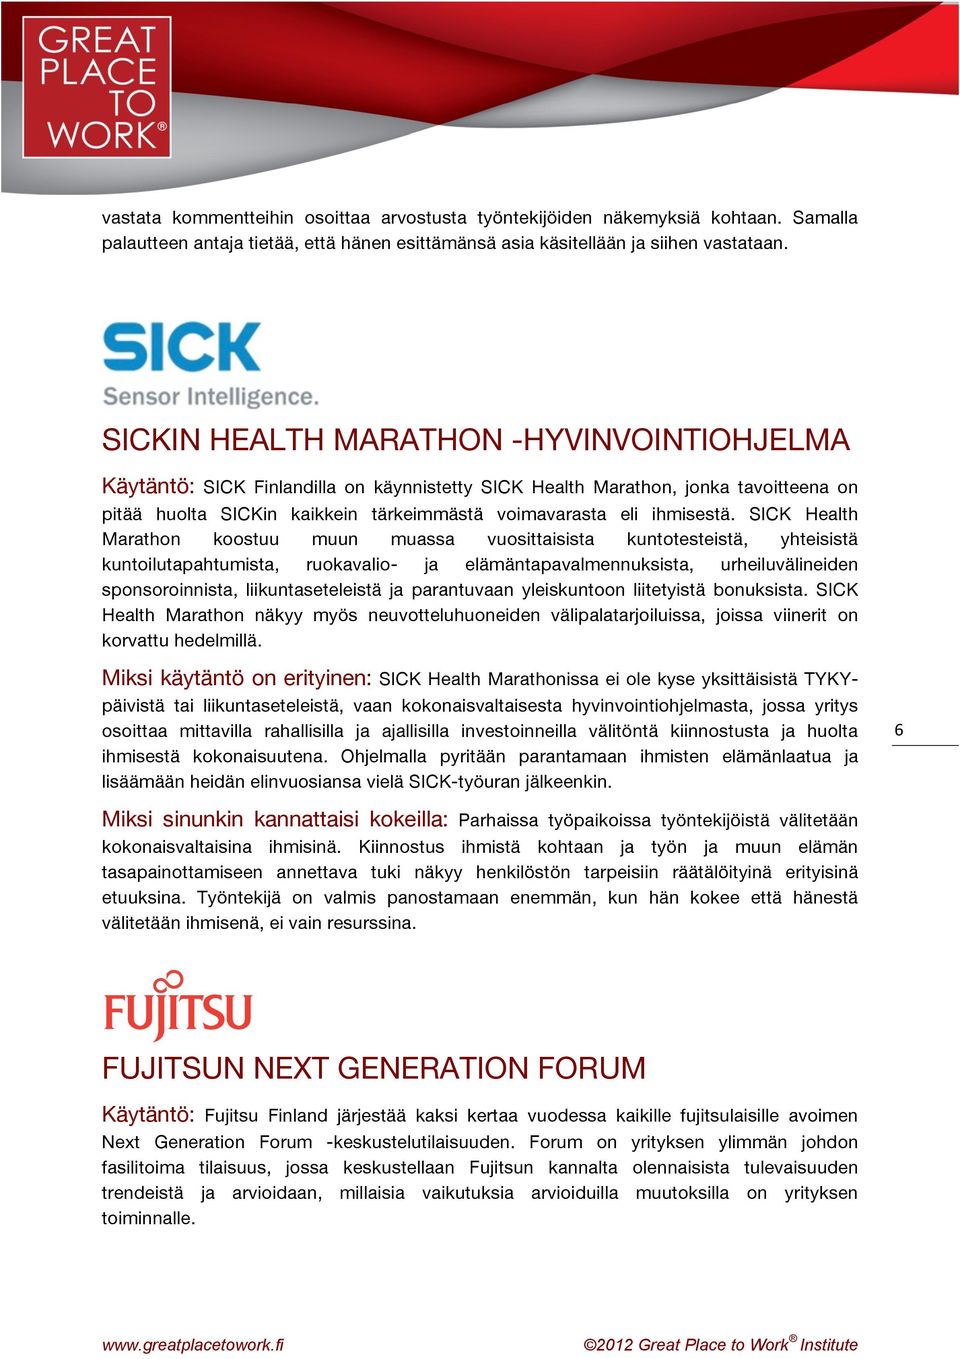 SICK Health Marathon koostuu muun muassa vuosittaisista kuntotesteistä, yhteisistä kuntoilutapahtumista, ruokavalio- ja elämäntapavalmennuksista, urheiluvälineiden sponsoroinnista, liikuntaseteleistä